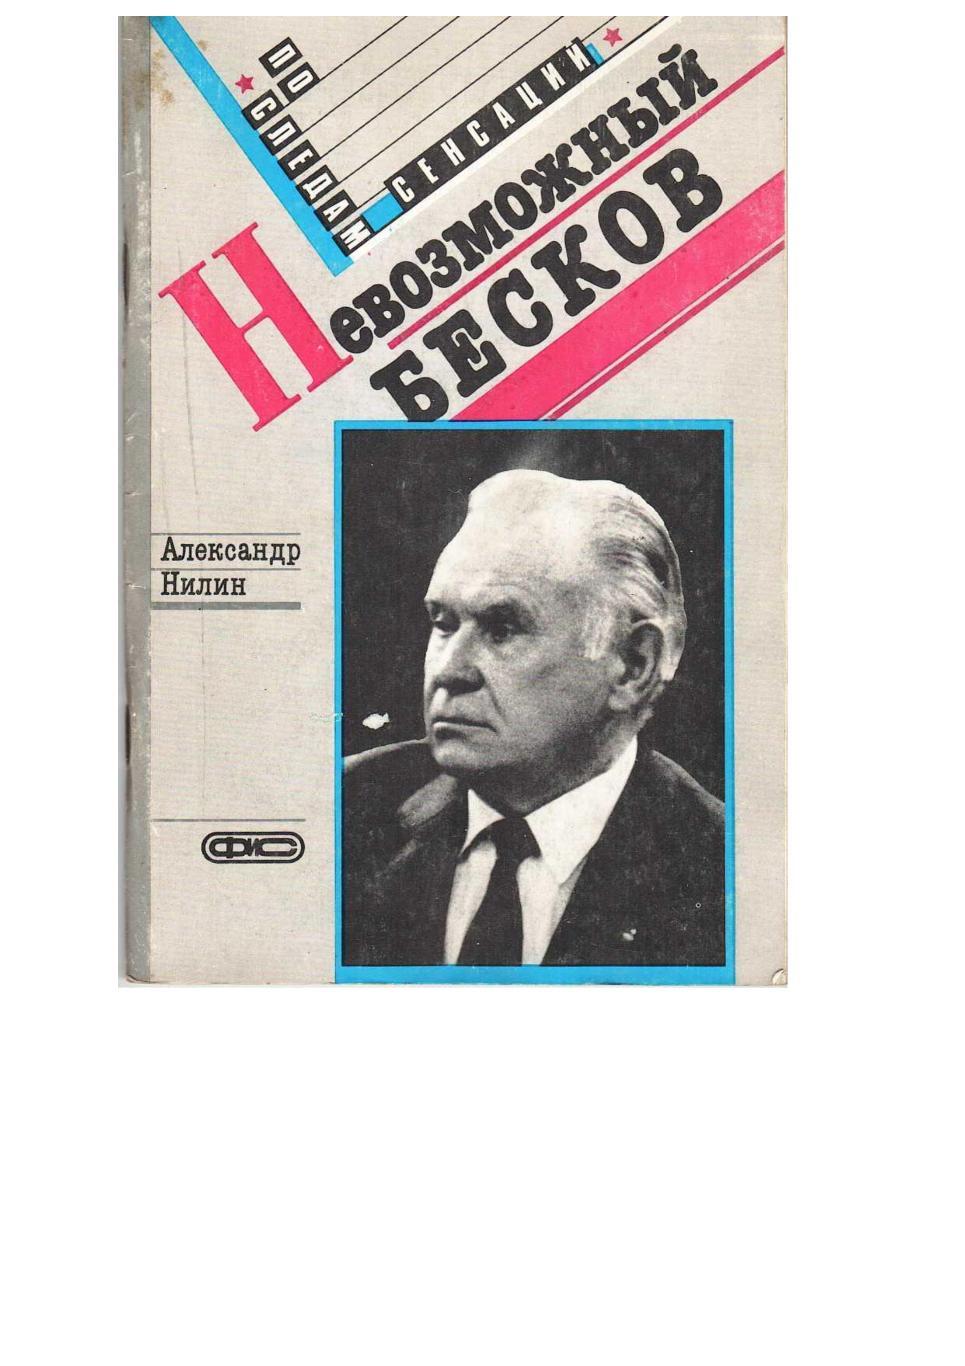 Нилин А.П. Невозможный Бесков (Портрет характера). – М., 1989. – 96 страниц.